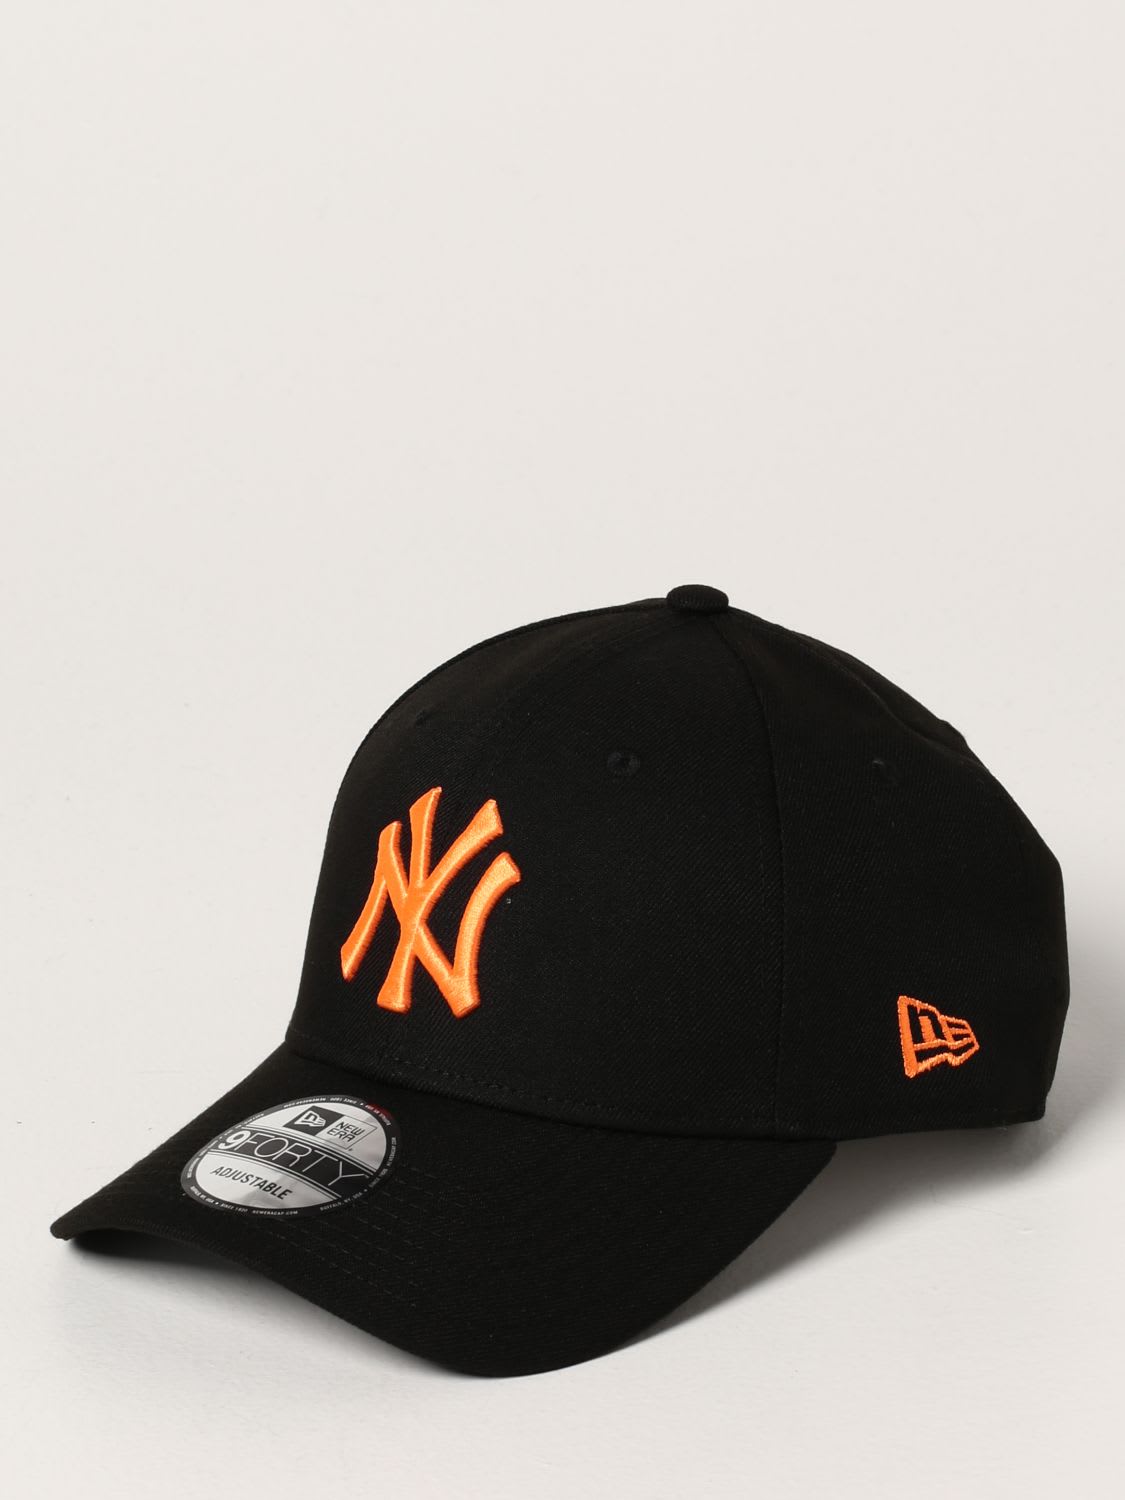 New Era Hat New Era Baseball Cap With 9forty Ny Logo